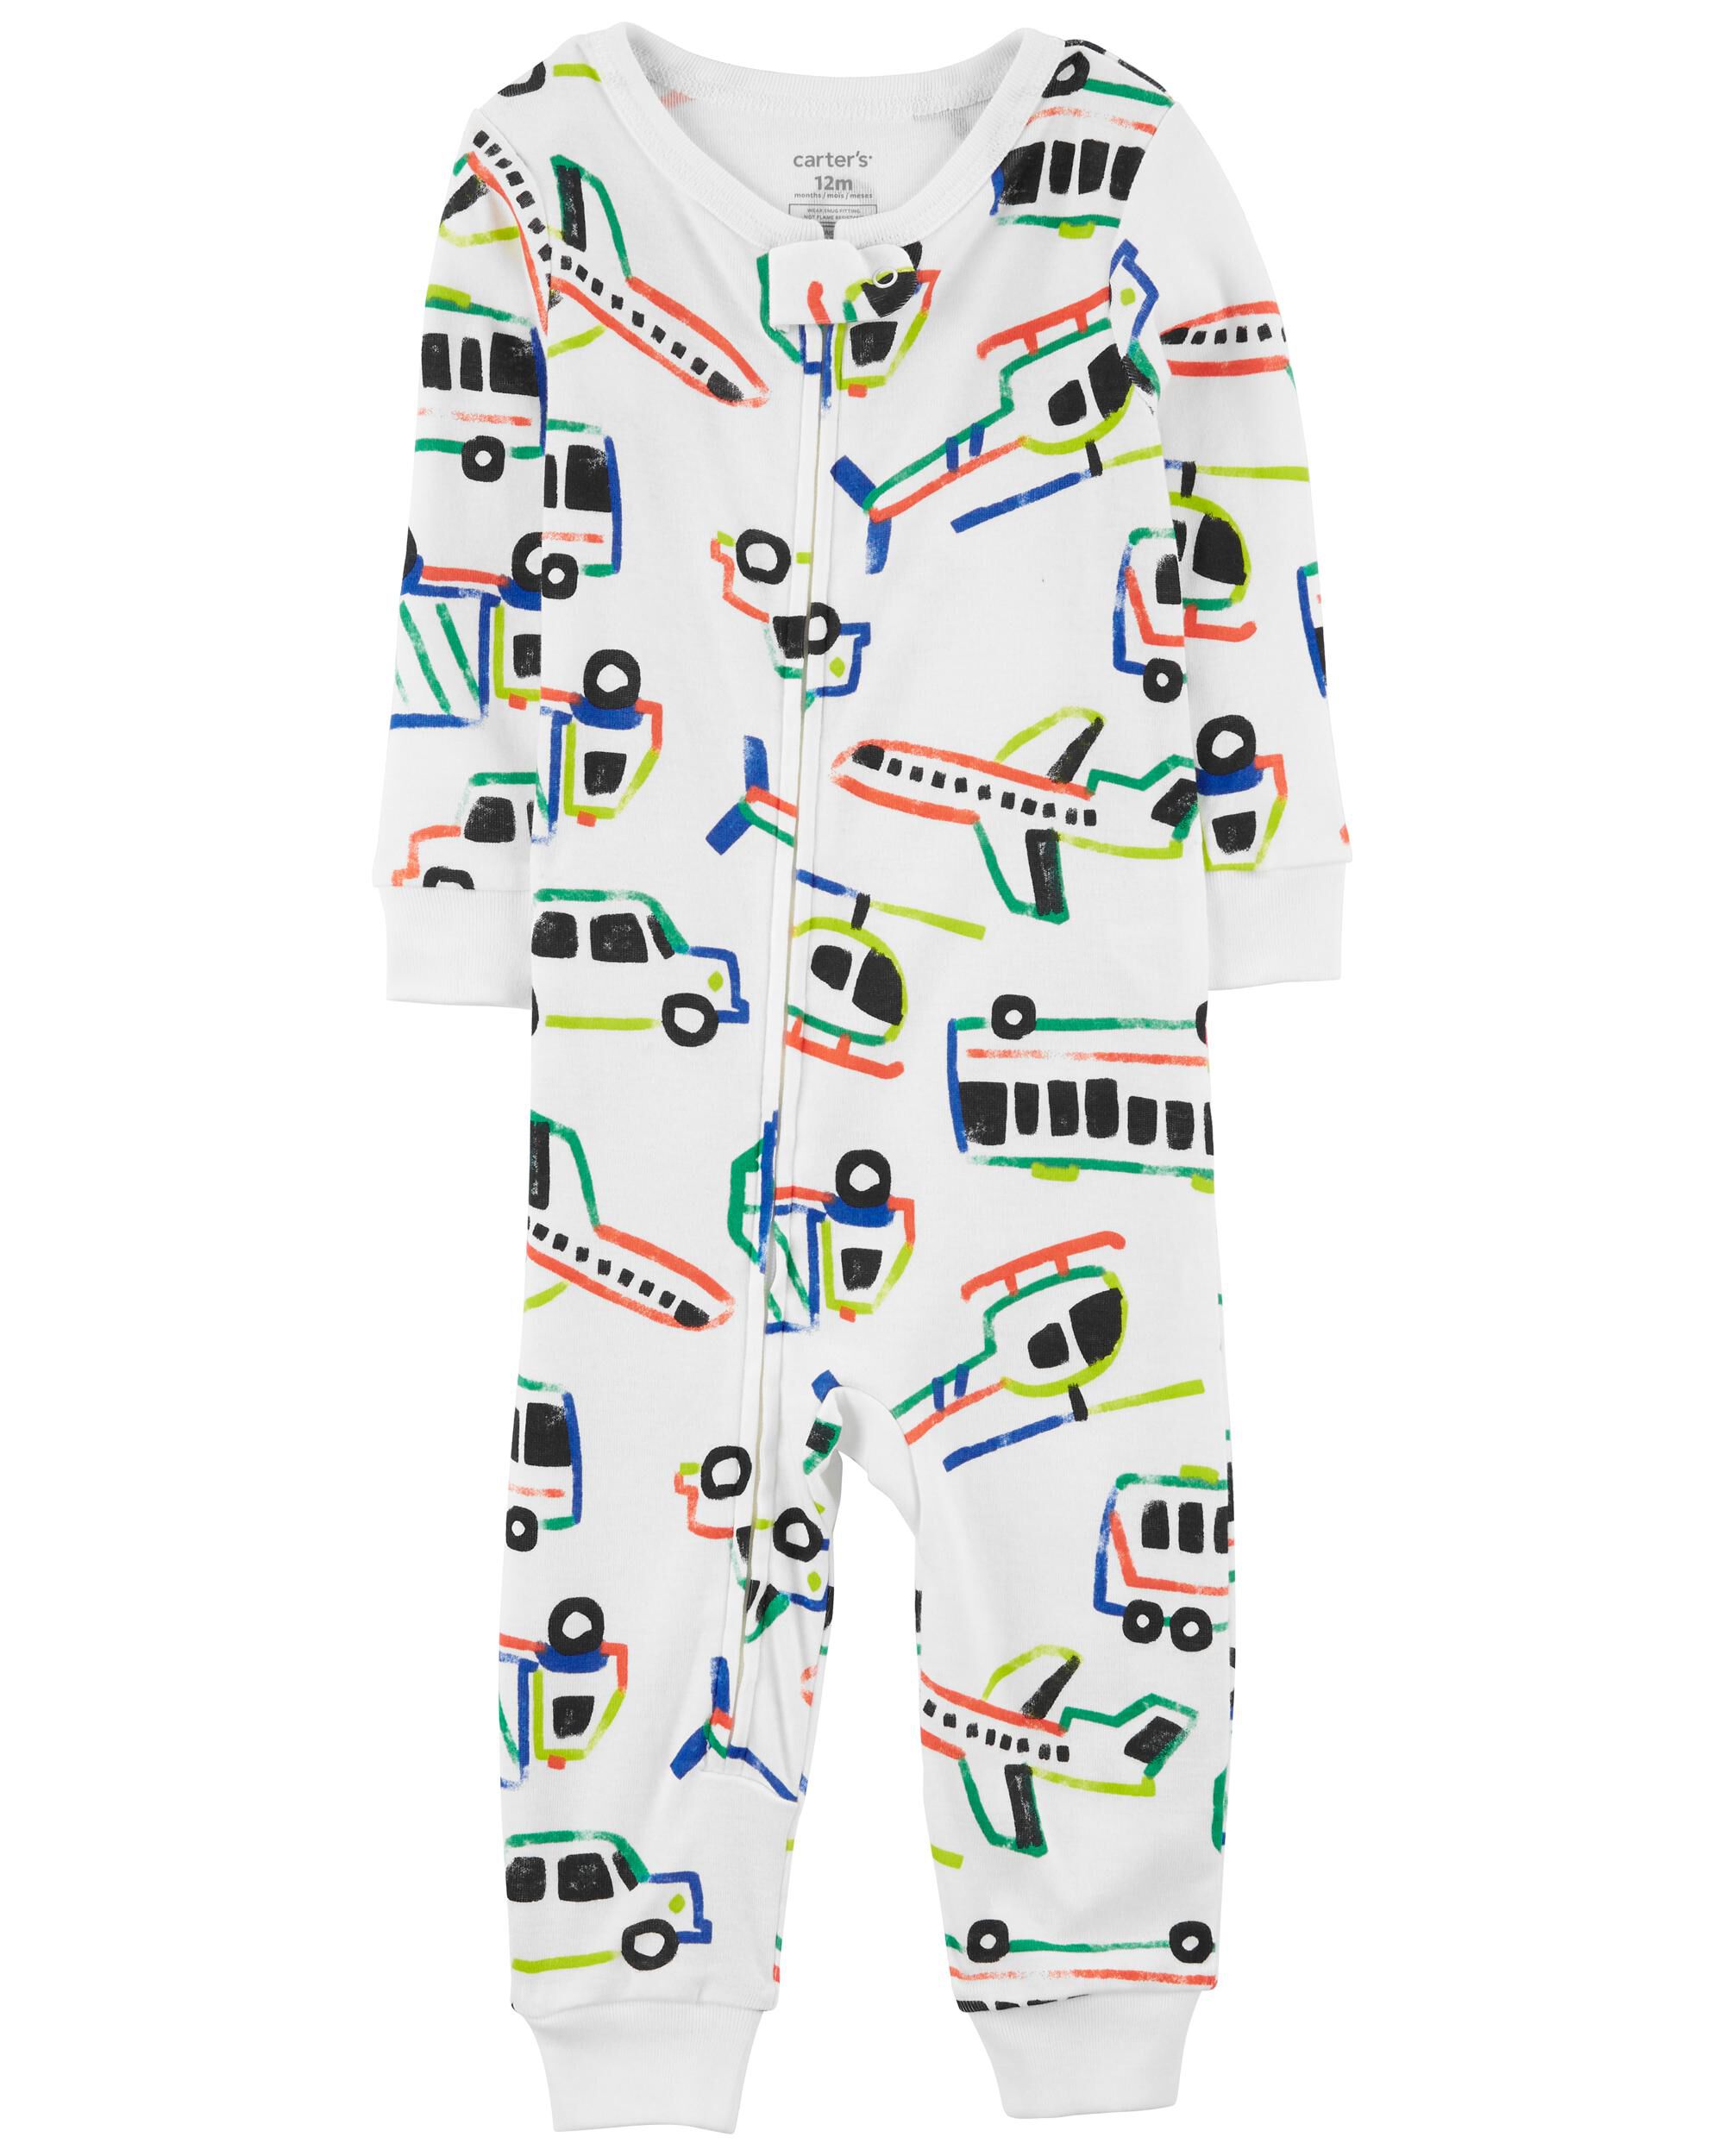 New Carter's 1-Piece Animal Fleece Pajama PJs Footie Sleeper Toddler Boy 